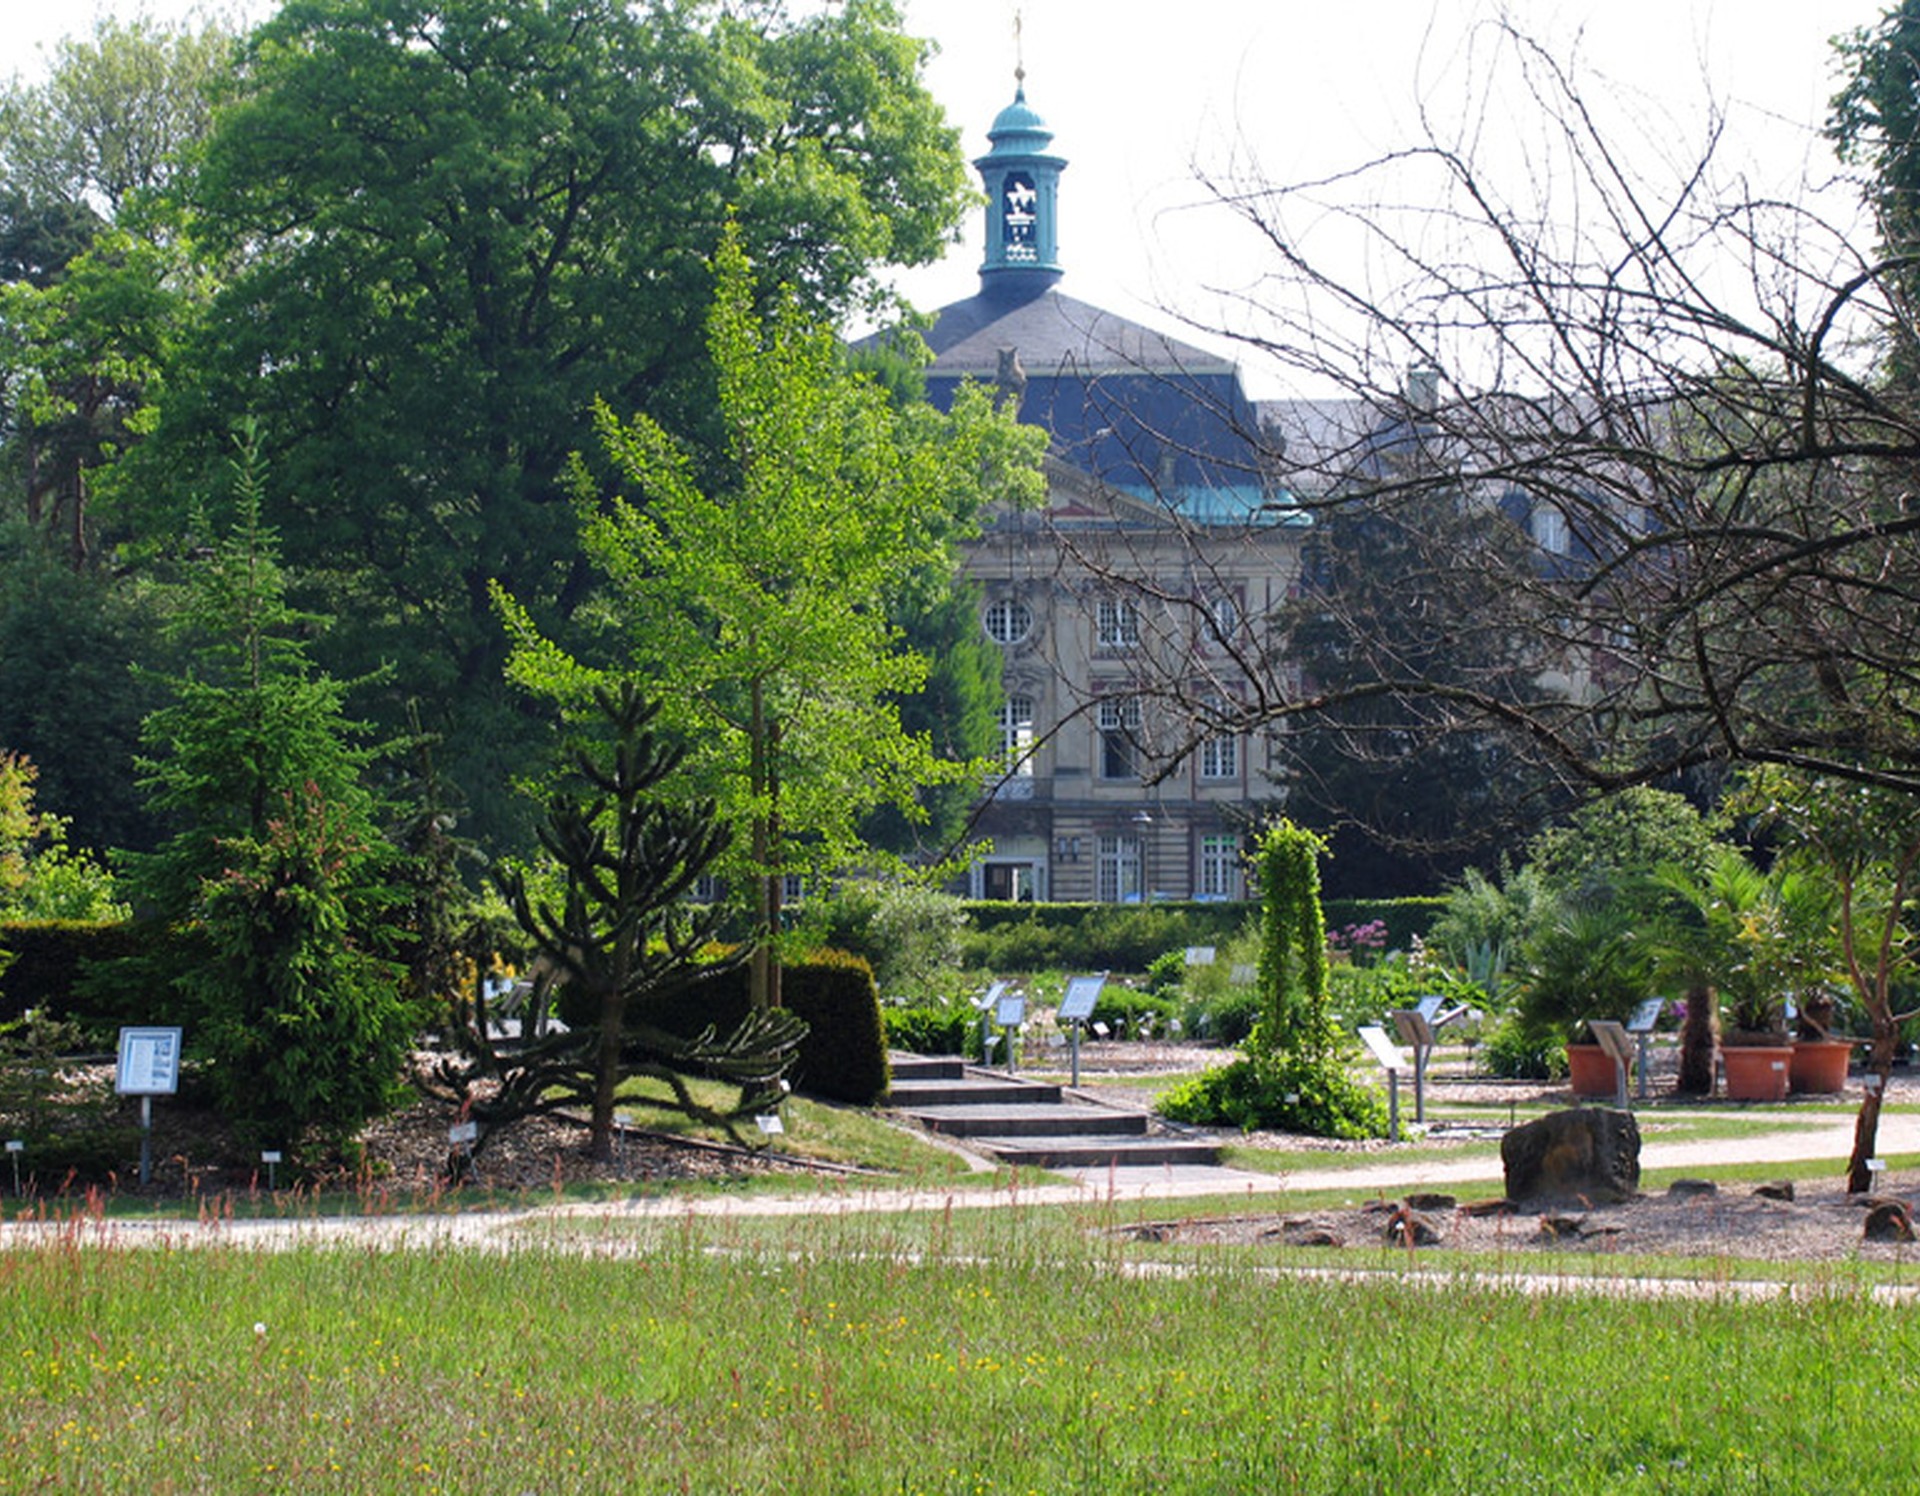 Blick auf den Systembereich des Botanischen Gartens Münster. Dort befinden sich Samenpflanzen. Im Hintergrund sieht man das Fürstbischöfliche Schloss Münster.